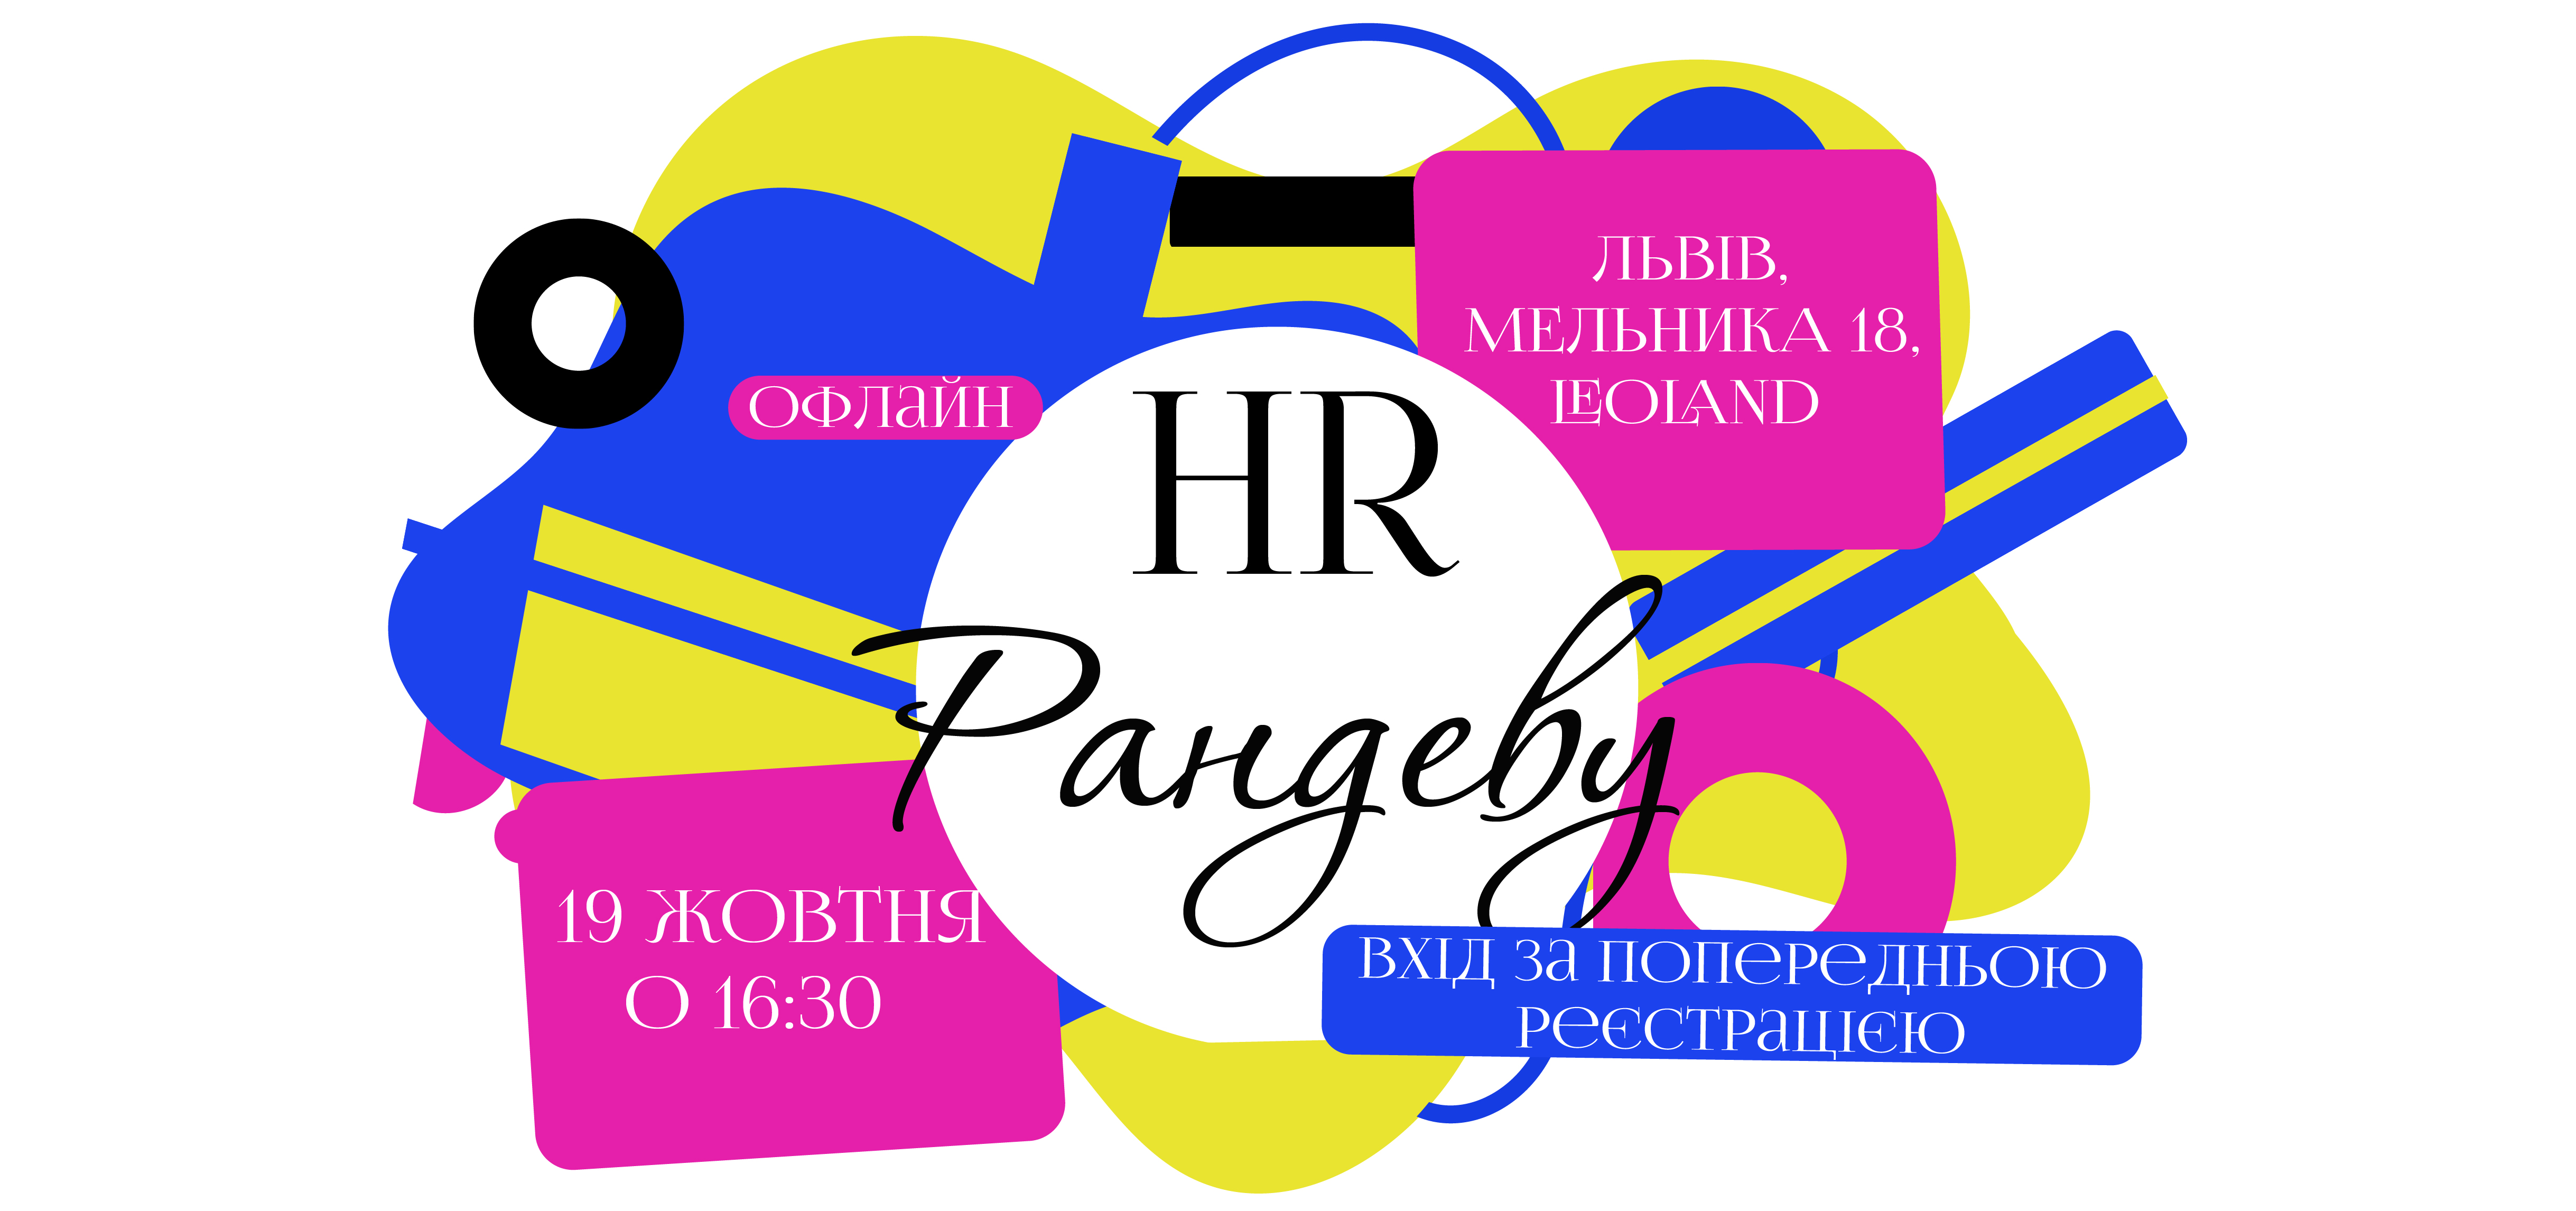 19 жовтня відбудеться «HR Рандеву»